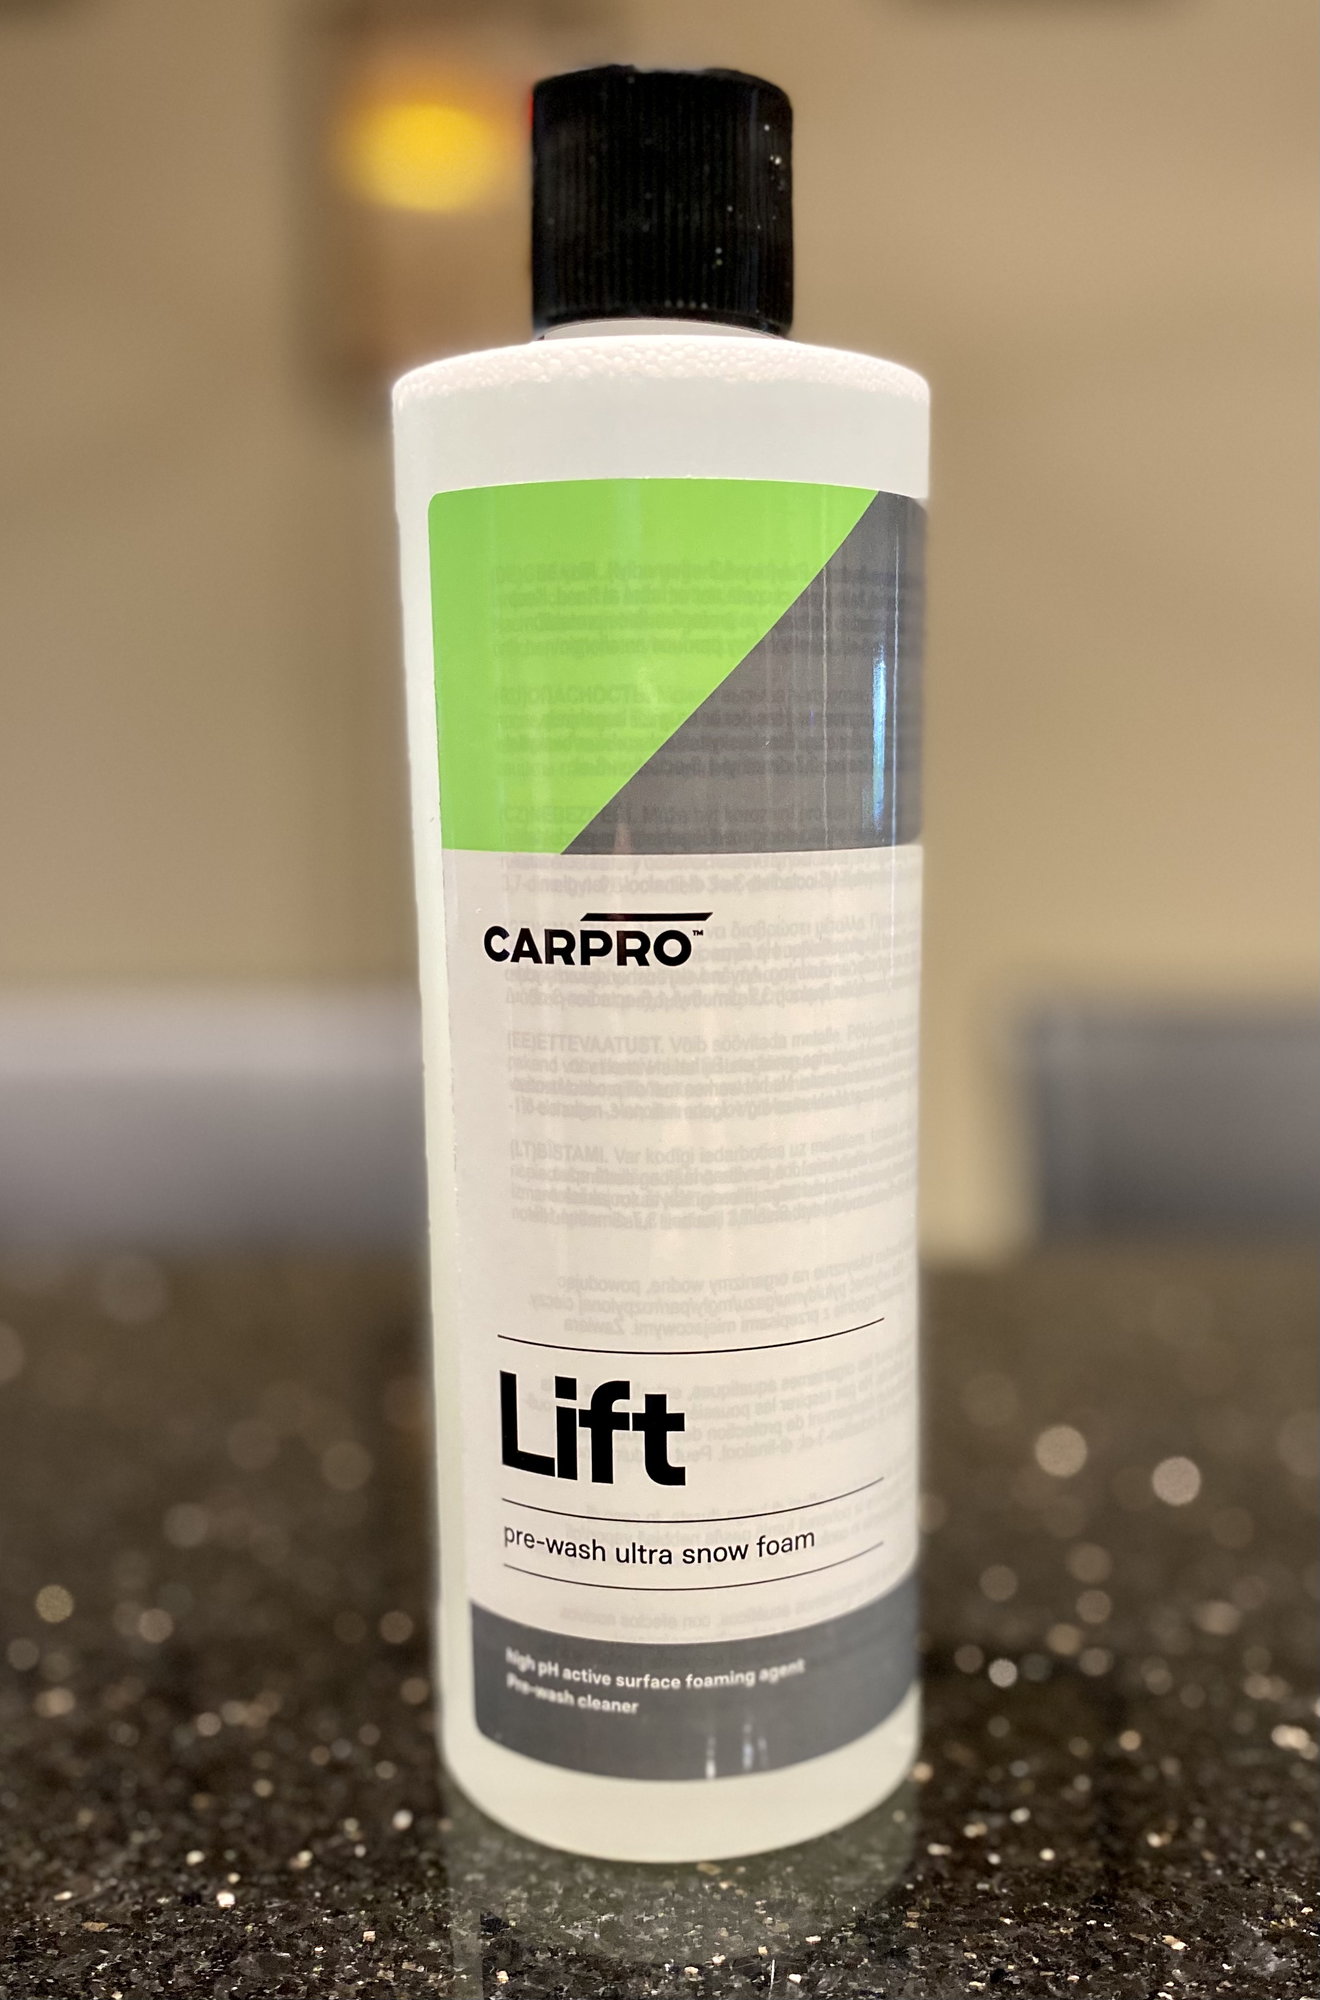 Carpro Reset - Diluting in foam lance bottle?